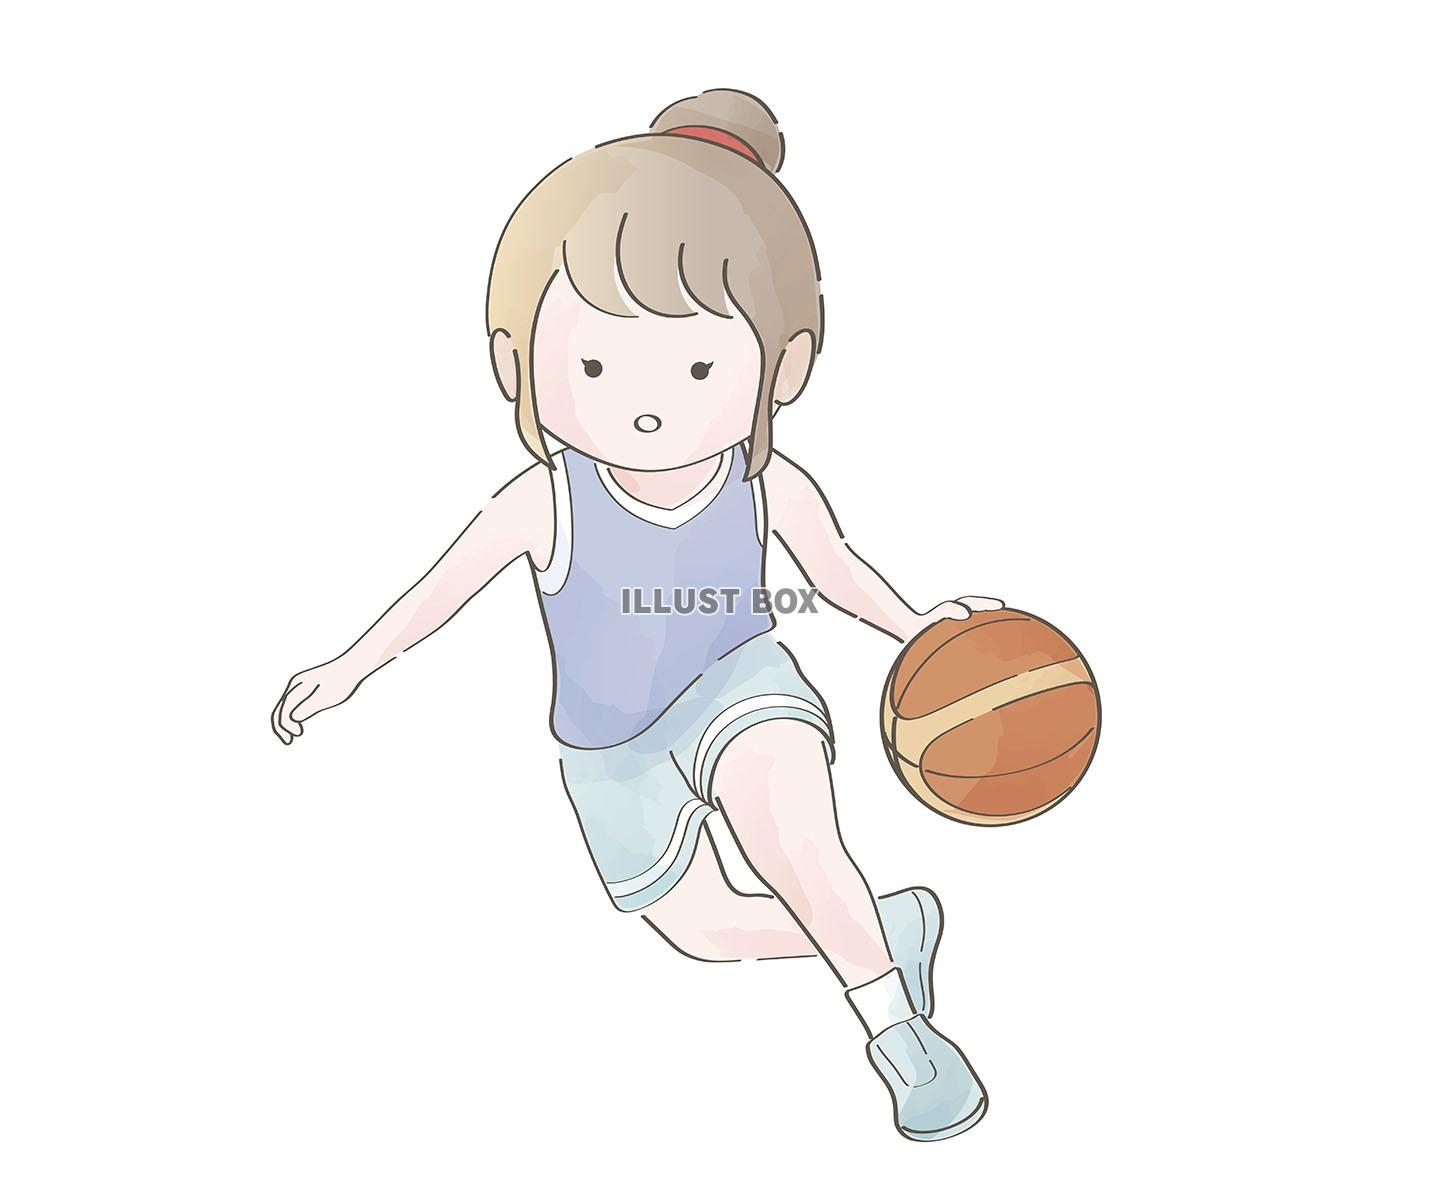 バスケットボールをする女の子の水彩風イラスト